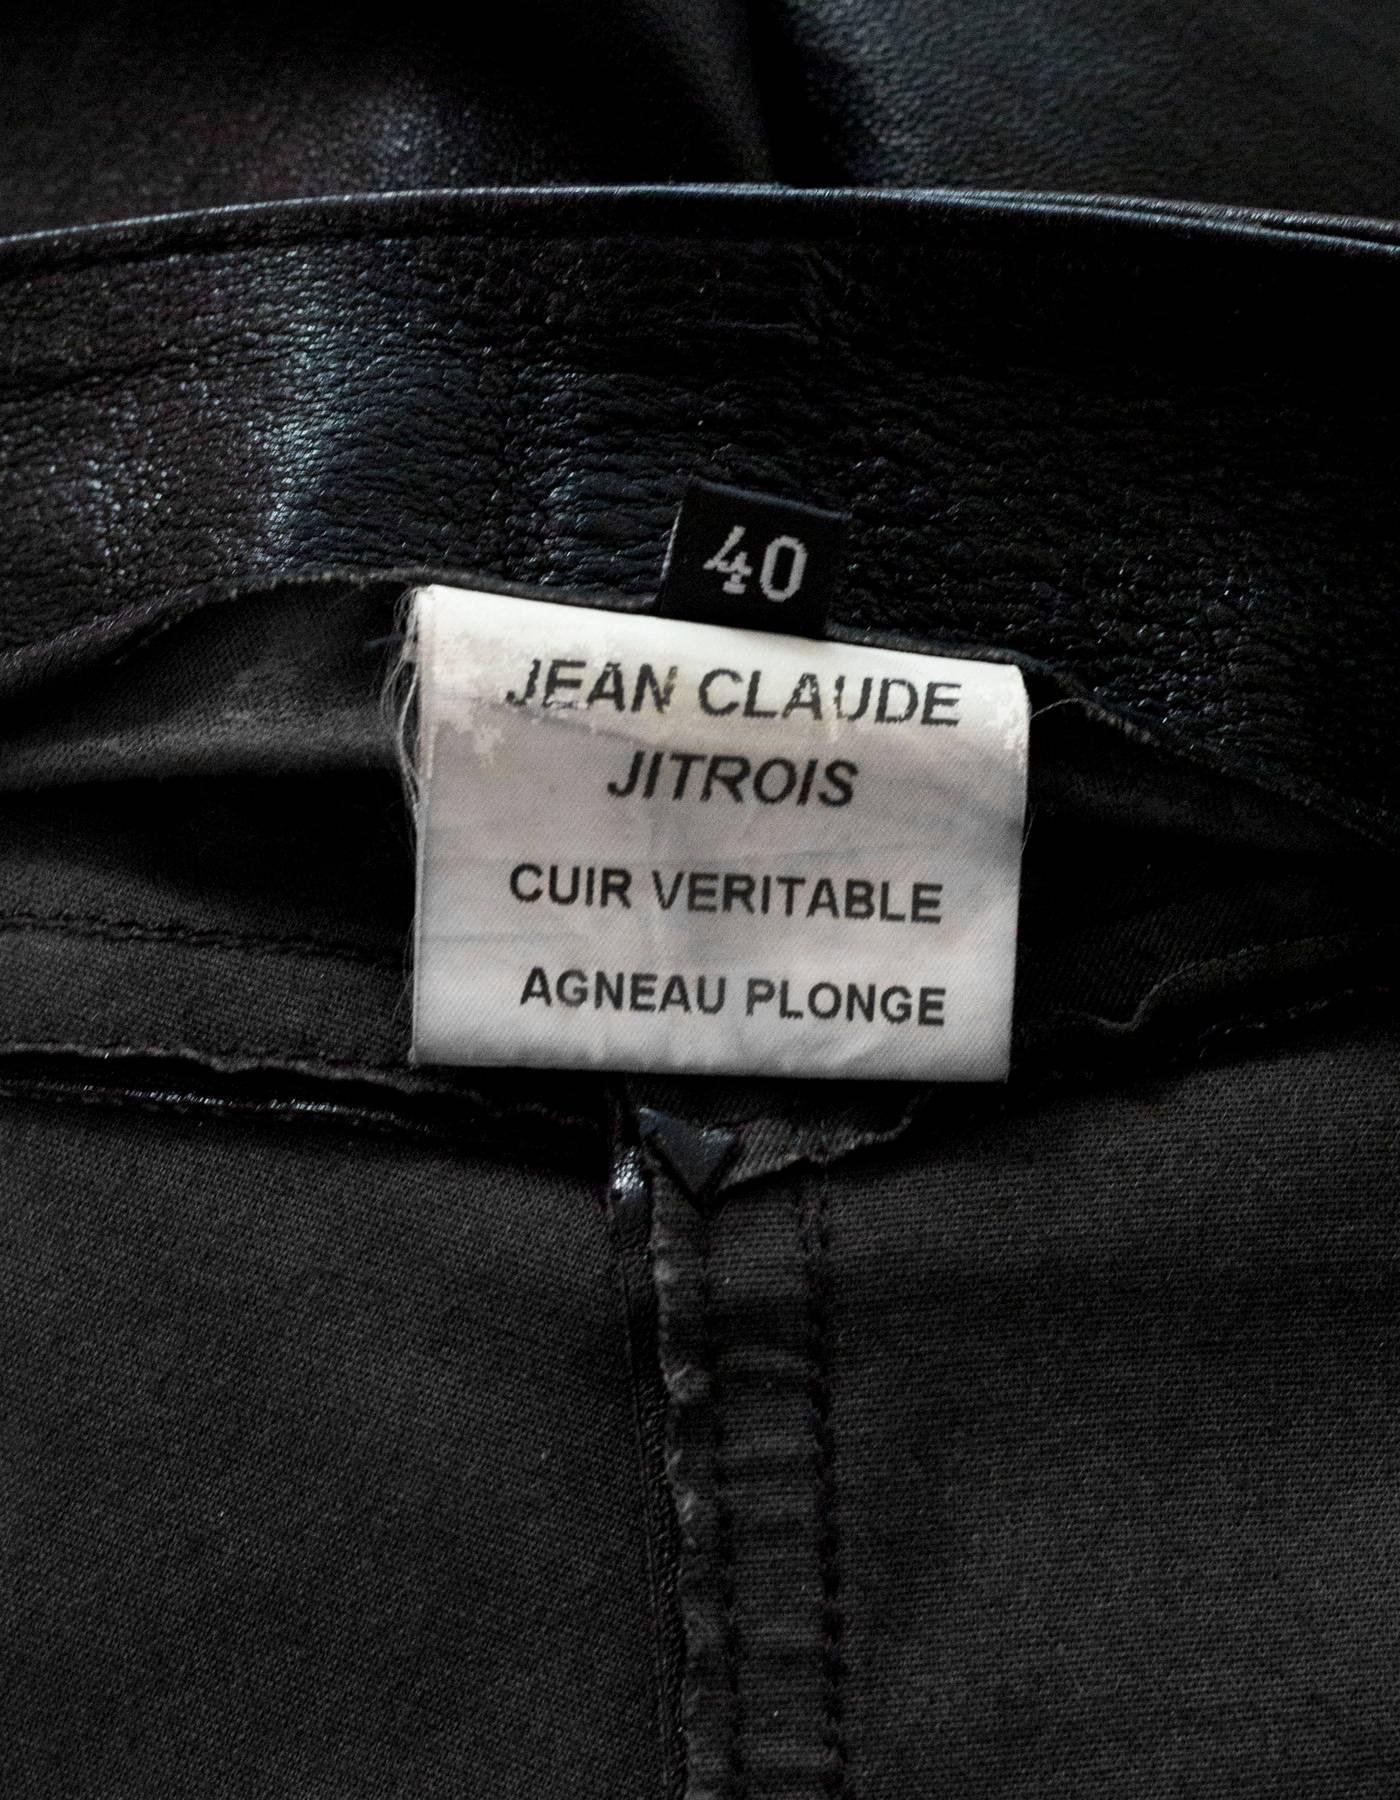 Jean Claude Jitrois Black Leather & Fur Pants Sz FR40 2